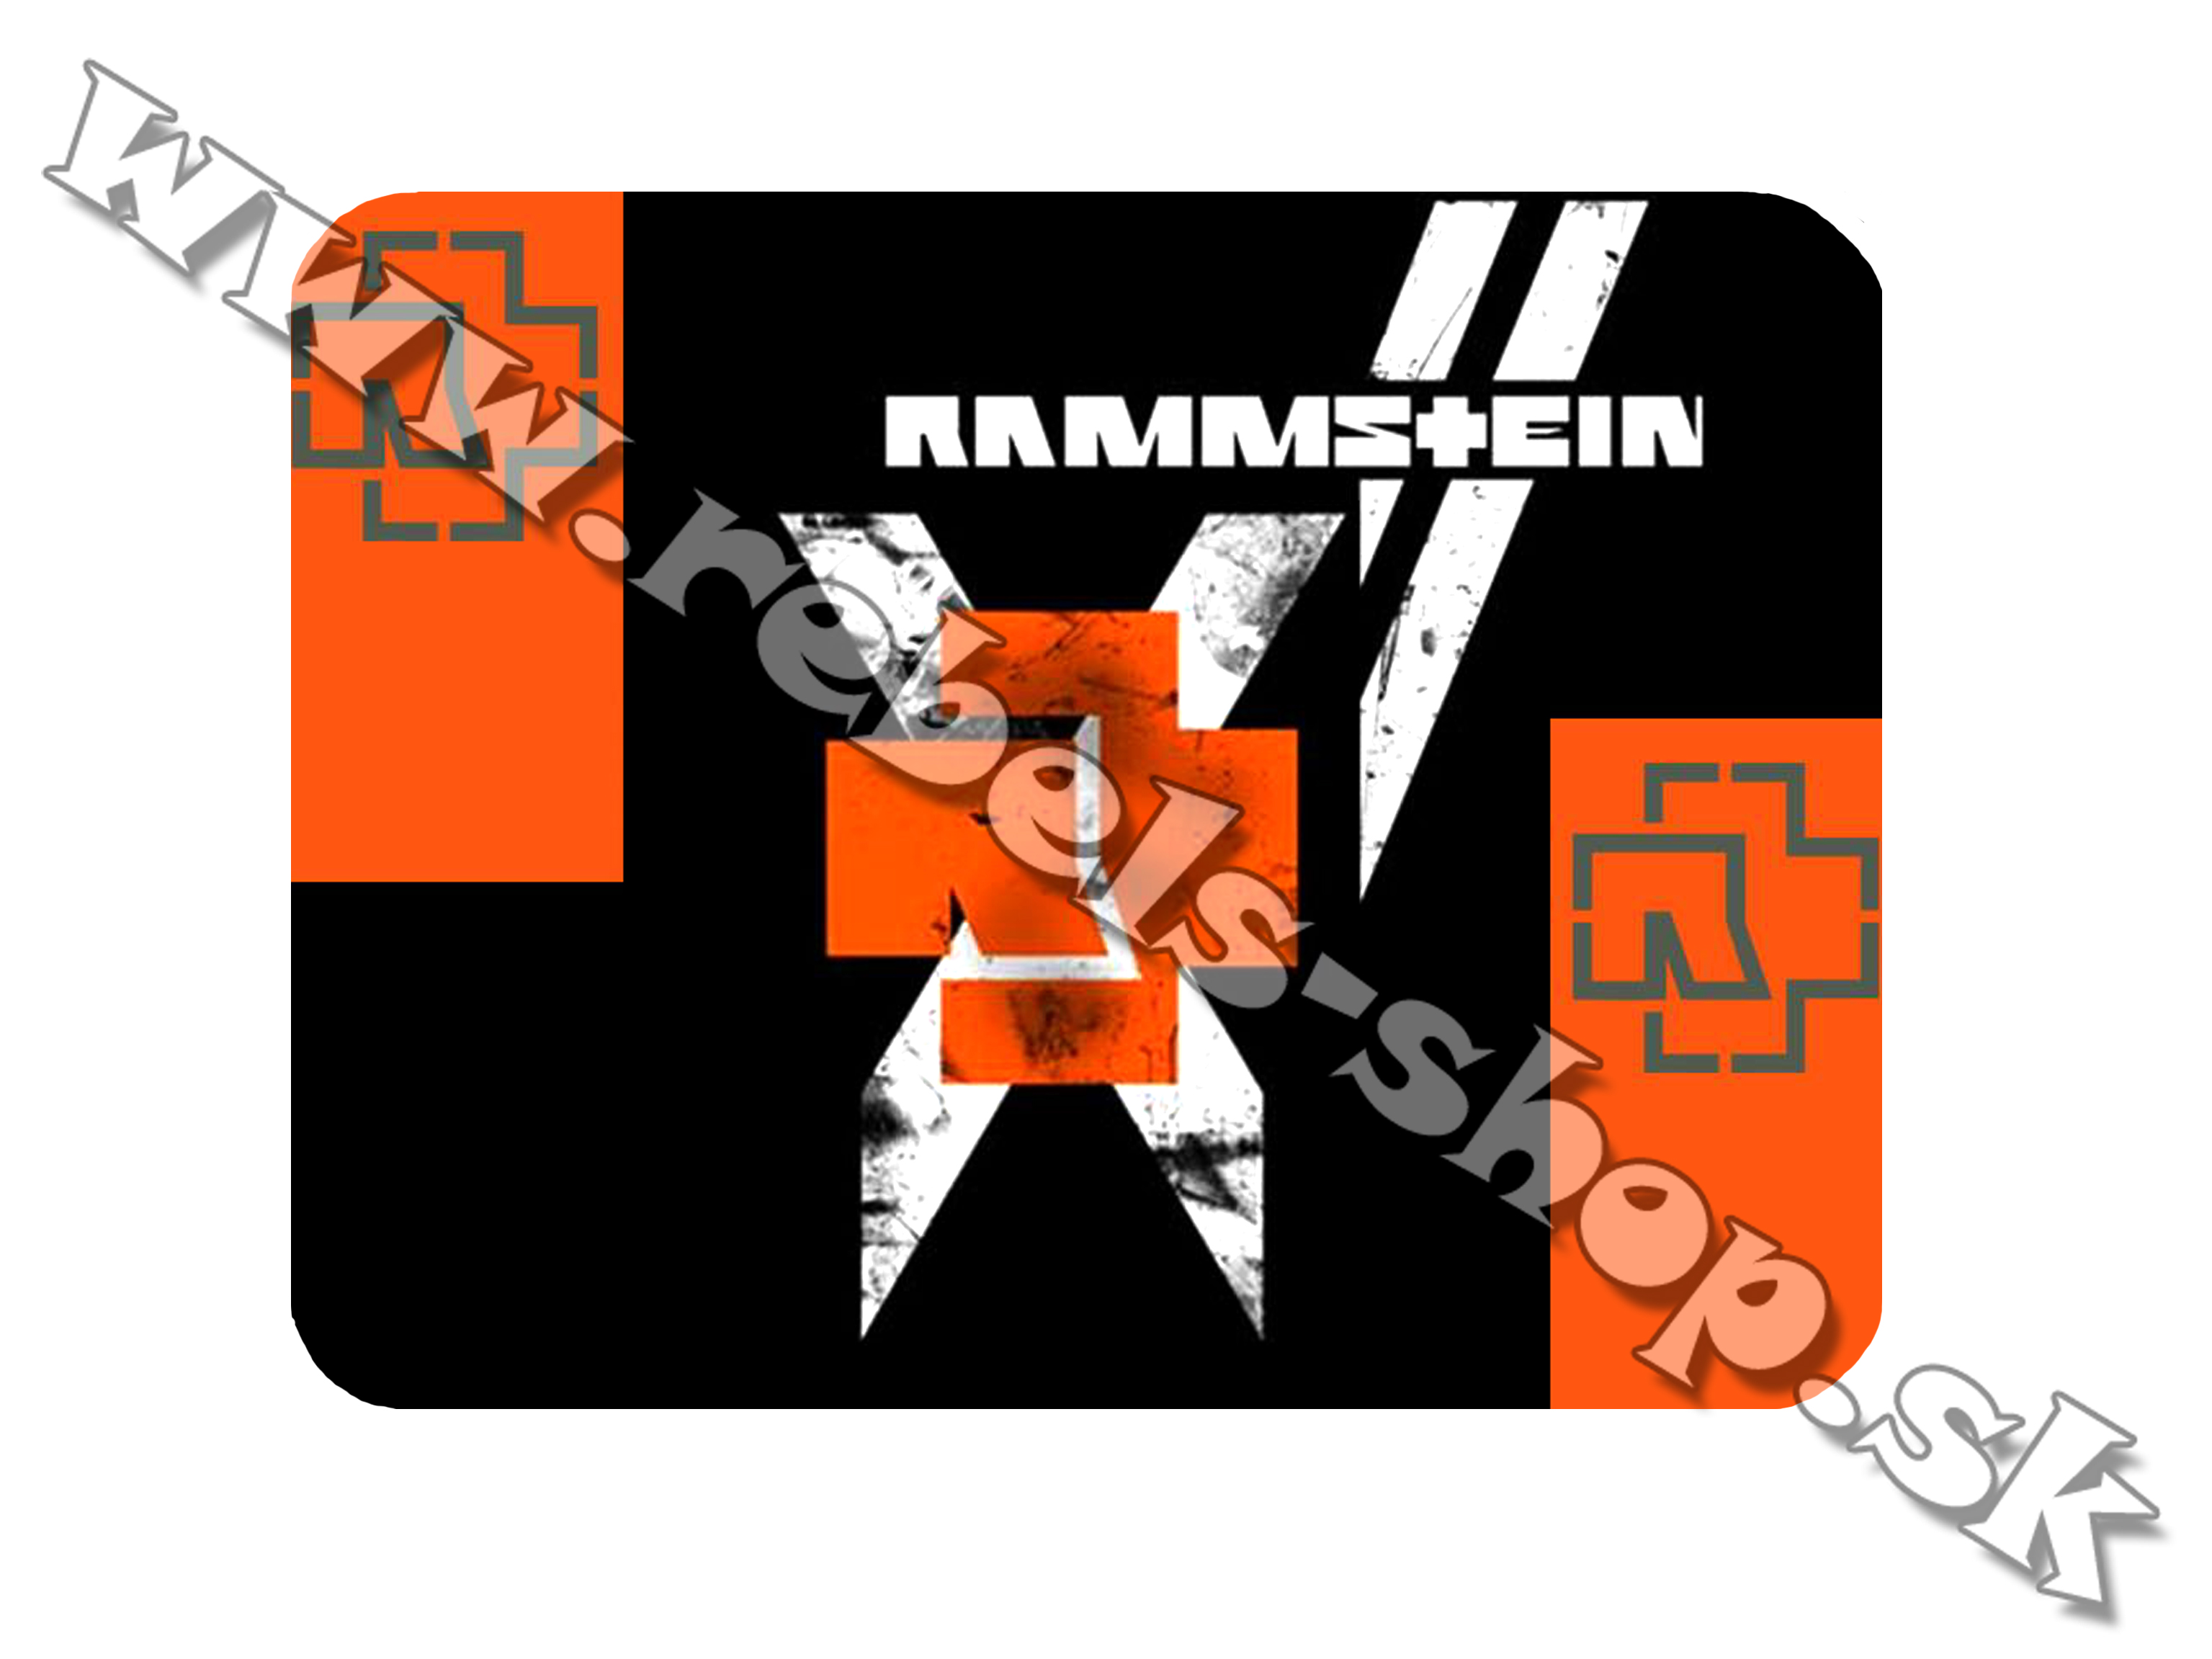 Podložka pod myš  "Rammstein"